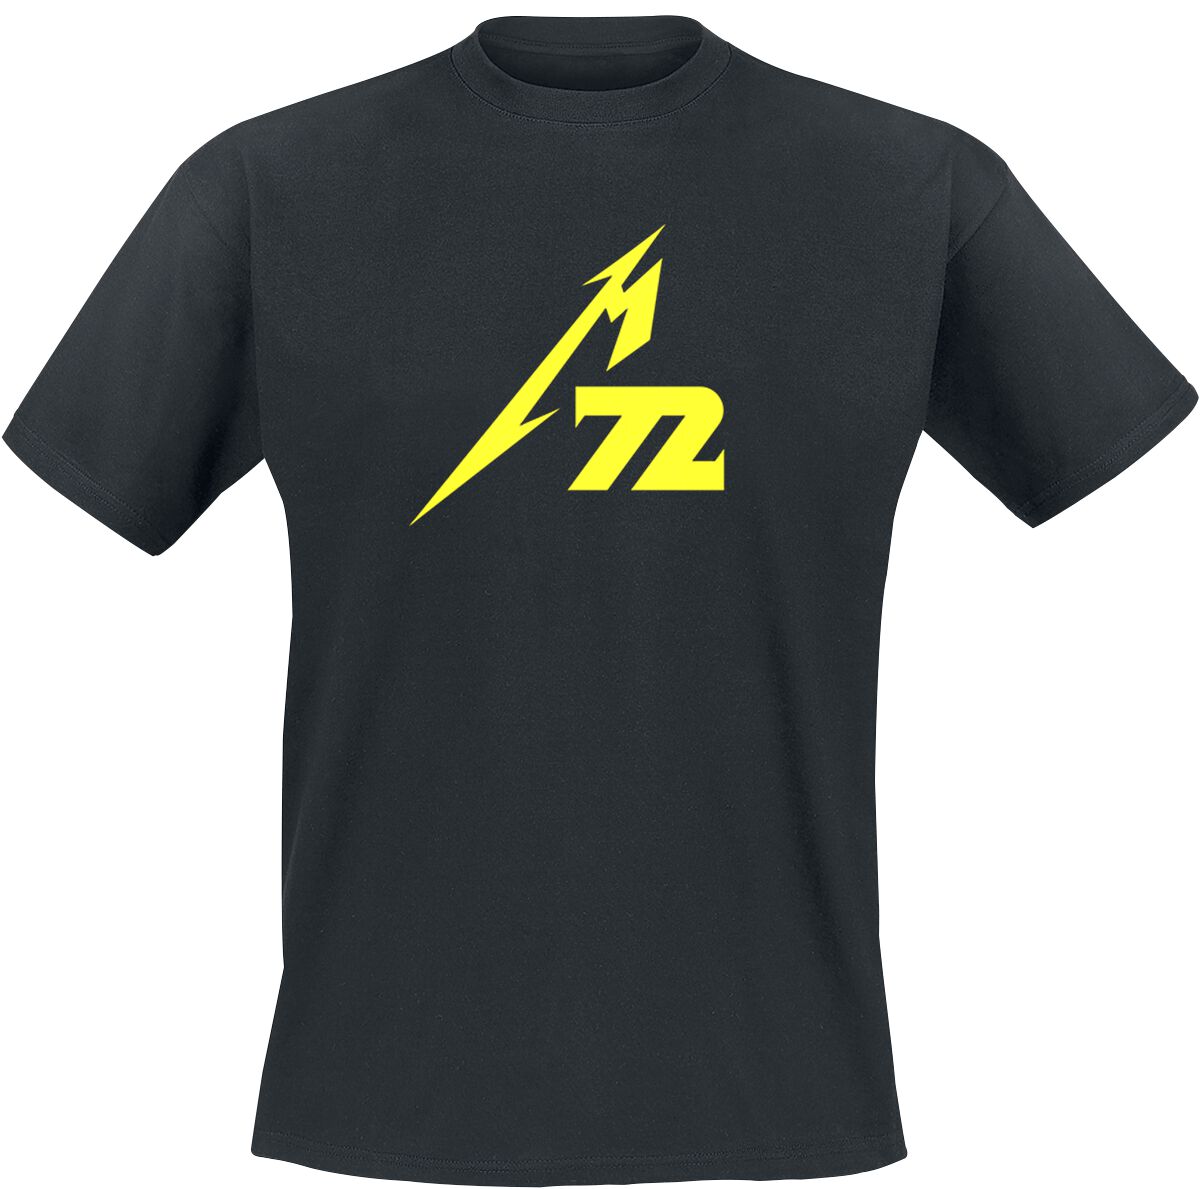 Metallica T-Shirt - Strobes (M72) - M bis 5XL - für Männer - Größe M - schwarz  - Lizenziertes Merchandise!